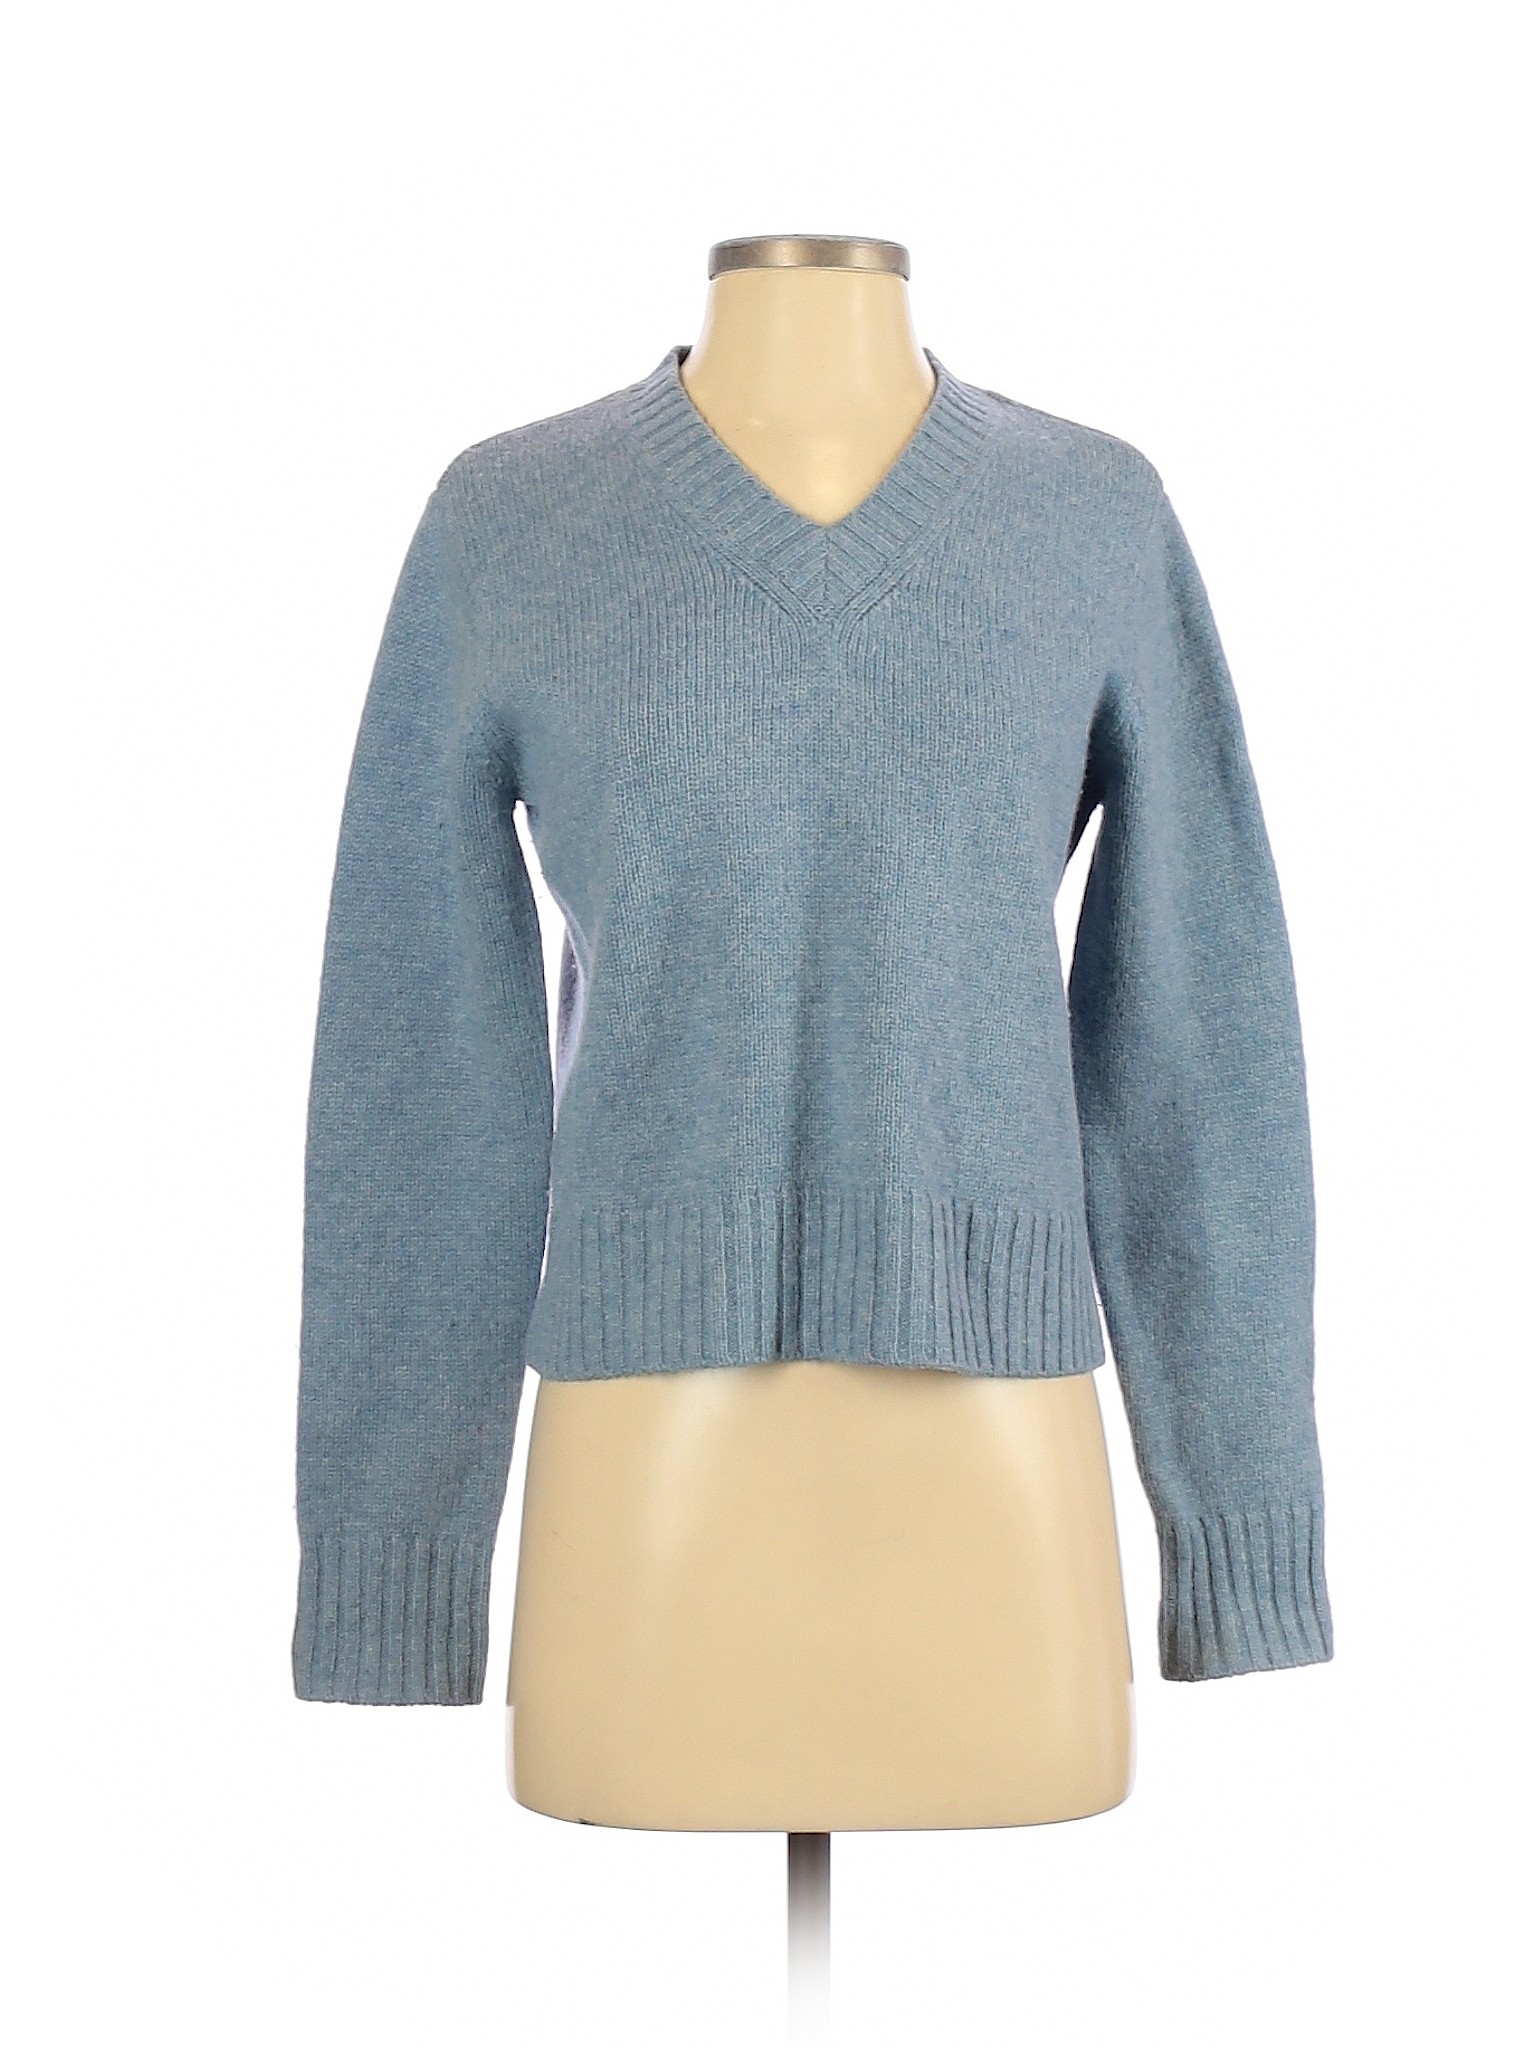 J.Crew Women Blue Wool Pullover Sweater S | eBay